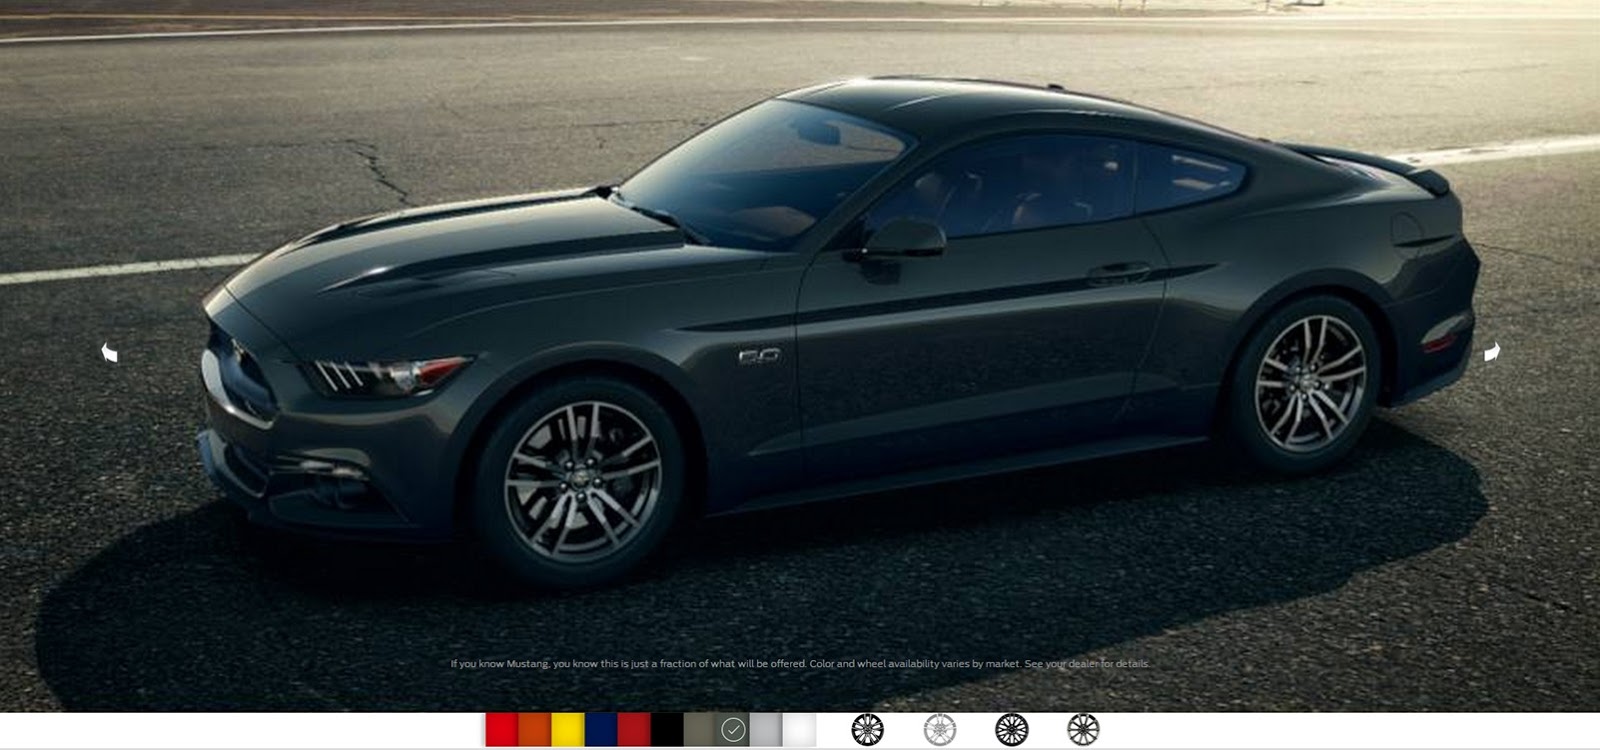 2015-Ford-Mustang-Photos-4%25255B3%25255D.jpg